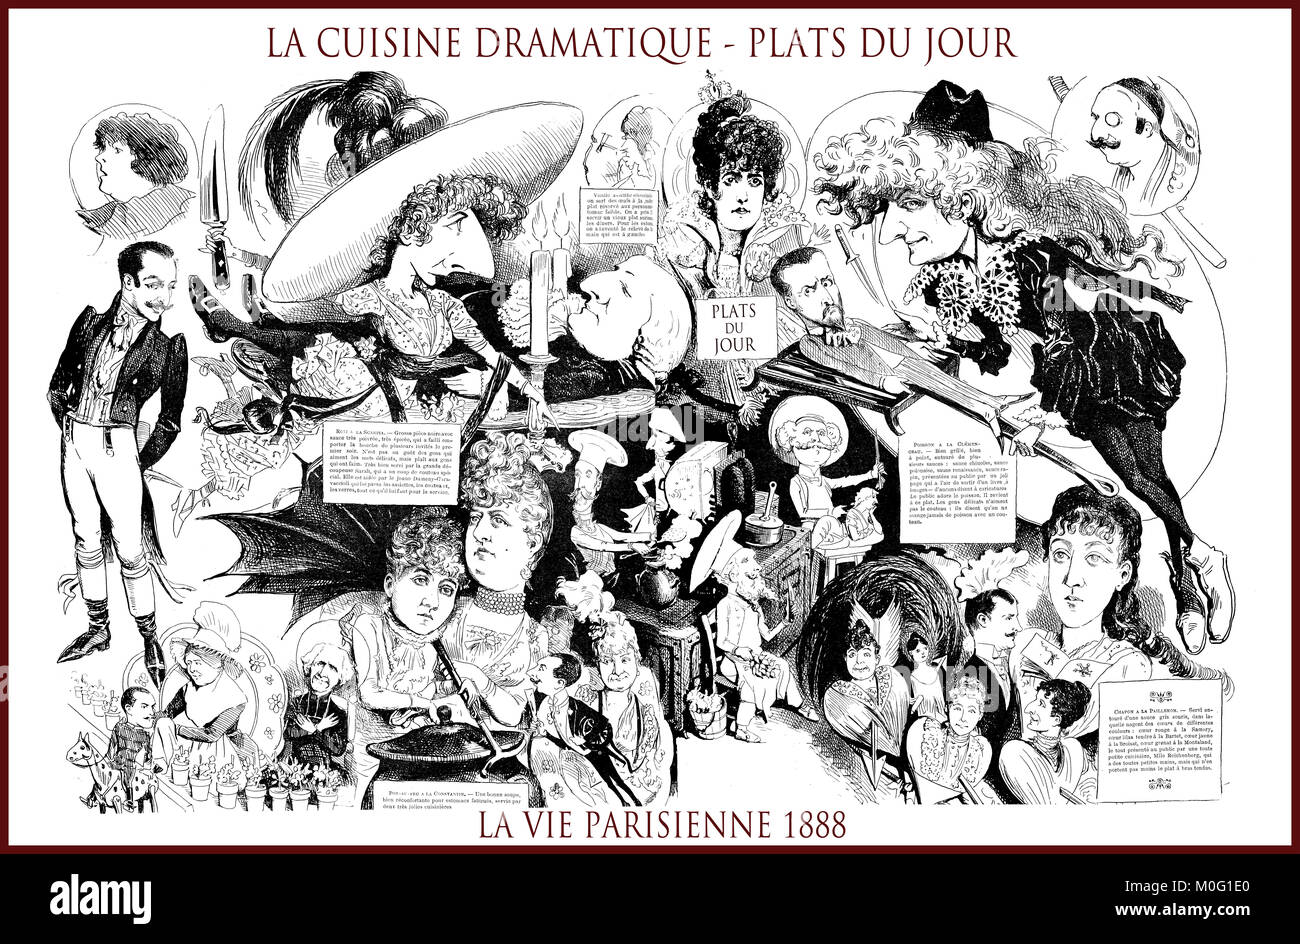 Französische satirische Zeitschrift La vie parisienne 1888, zentrale Seite: La cuisine dramatique, plats du jour - Drama Küche, heute-Liste. Humor, Karikaturen, Porträts Stockfoto